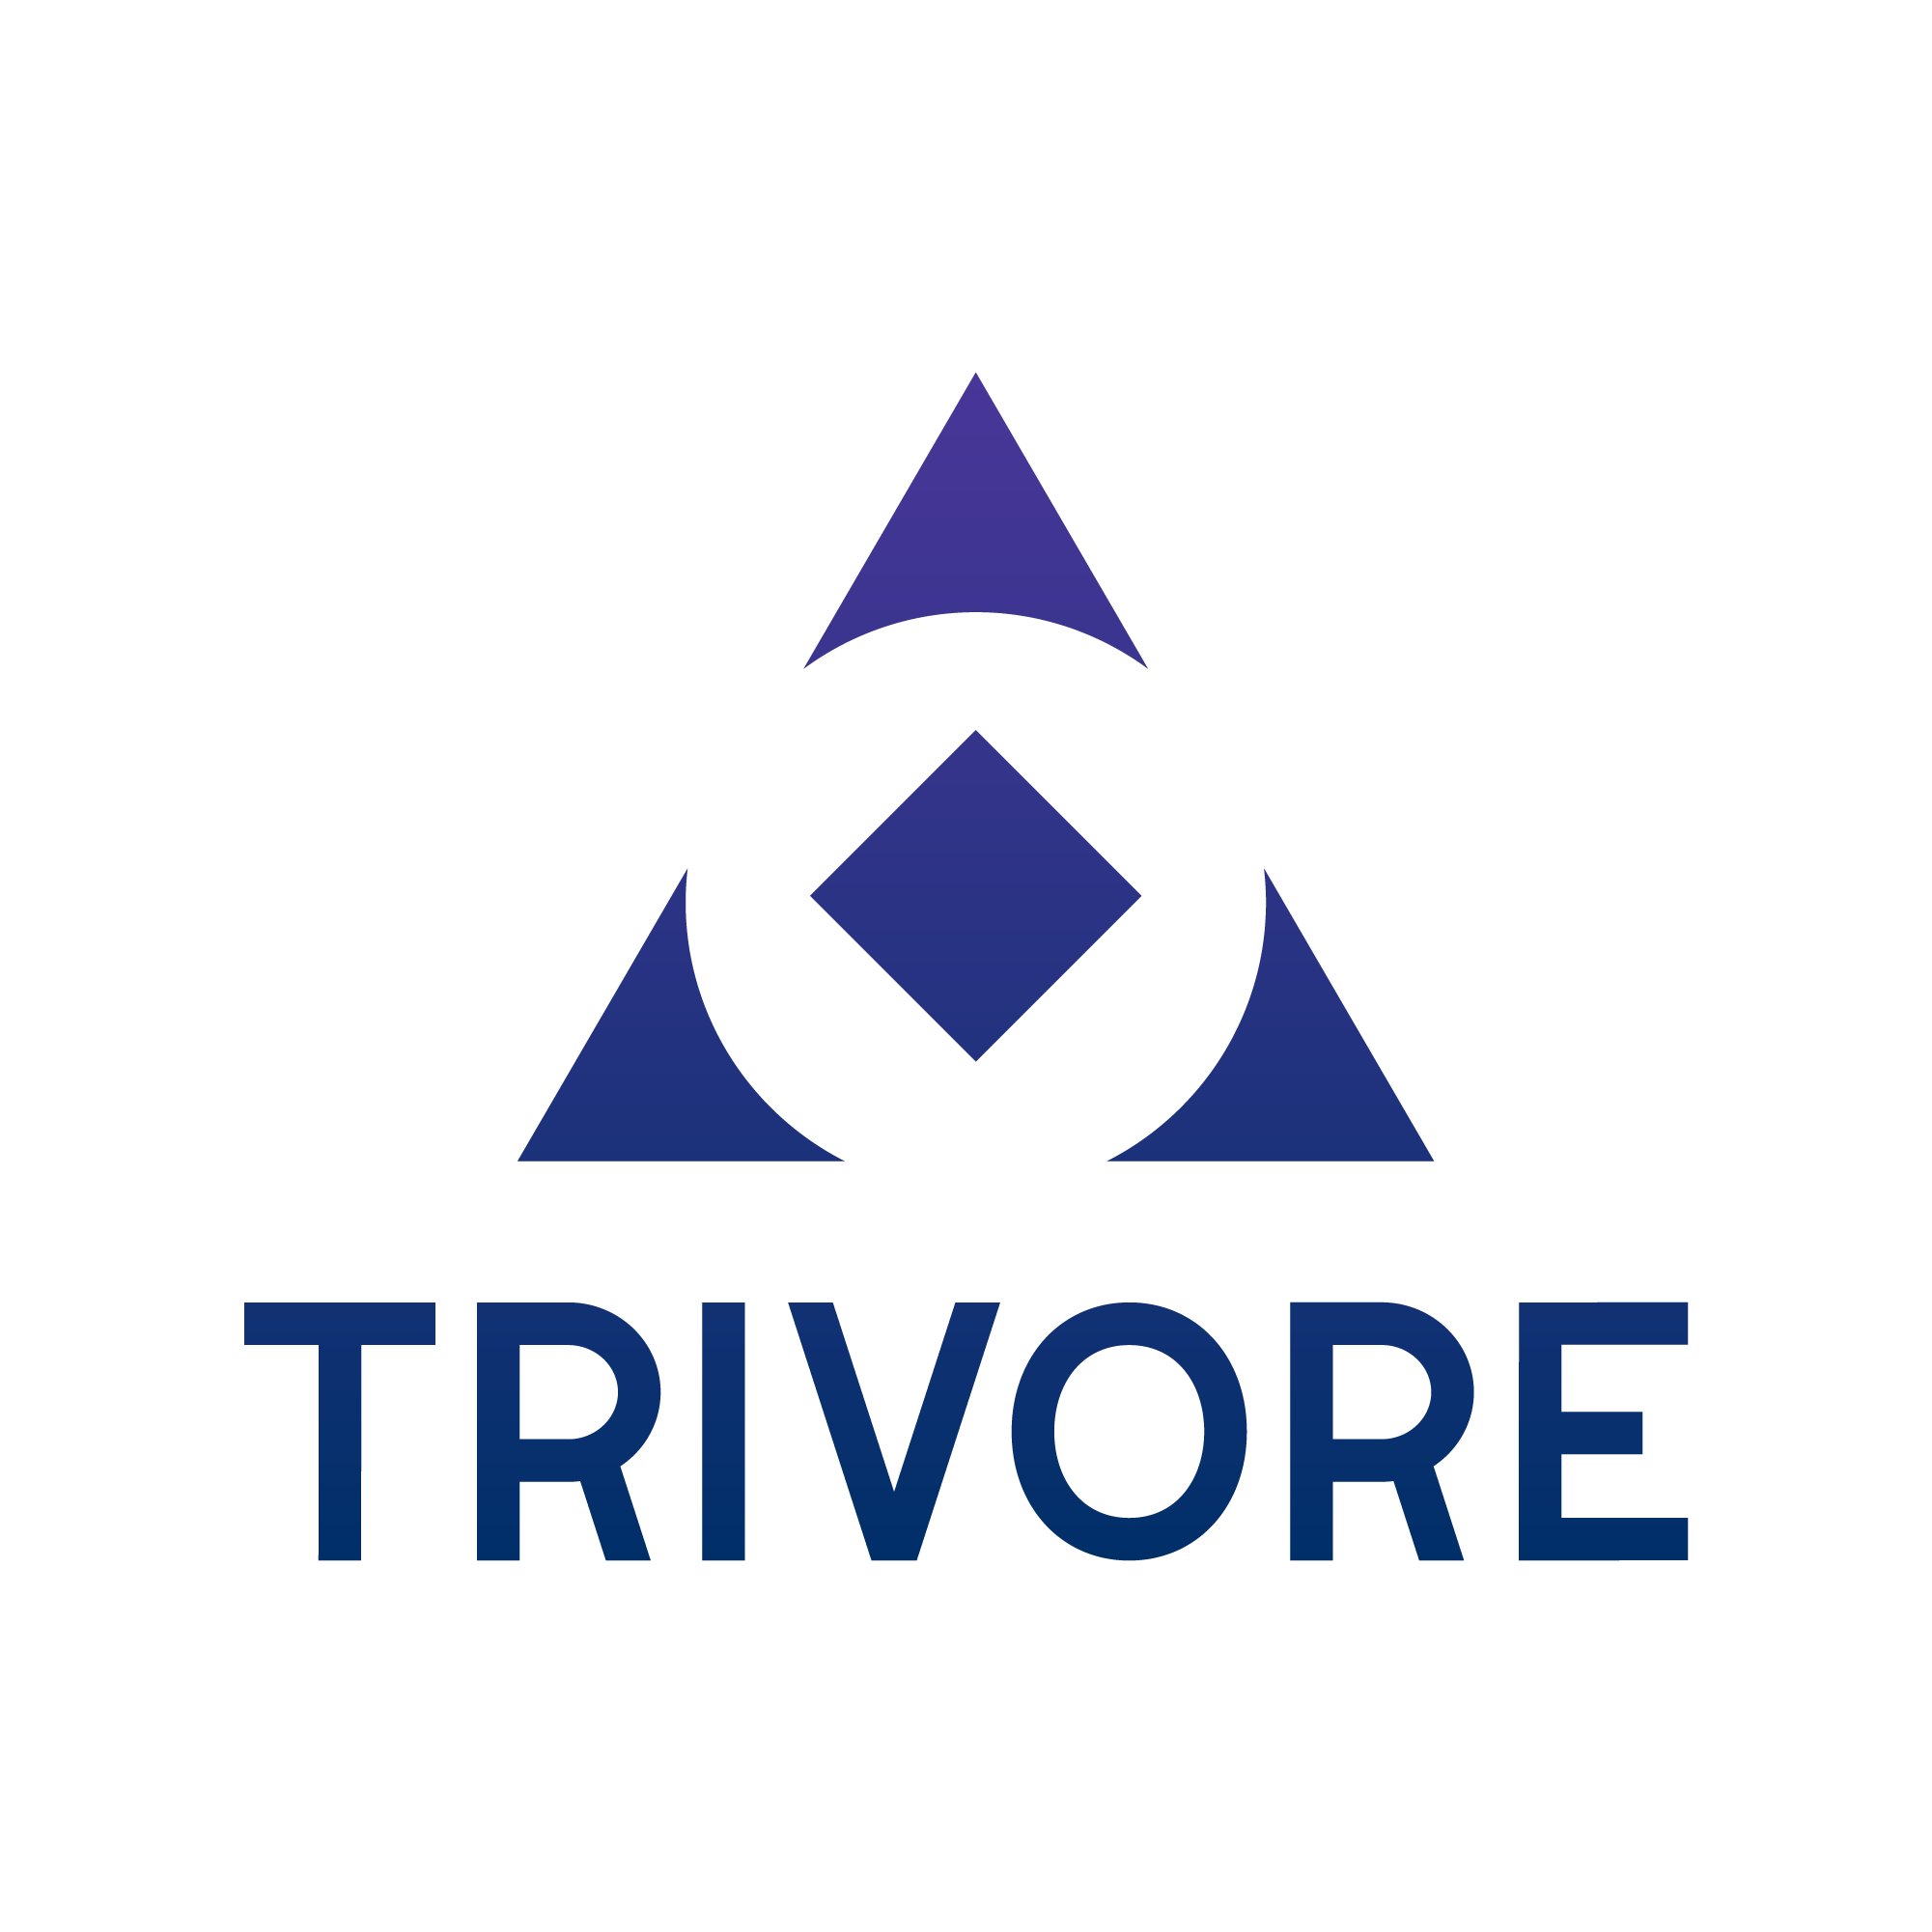 Trivore logo